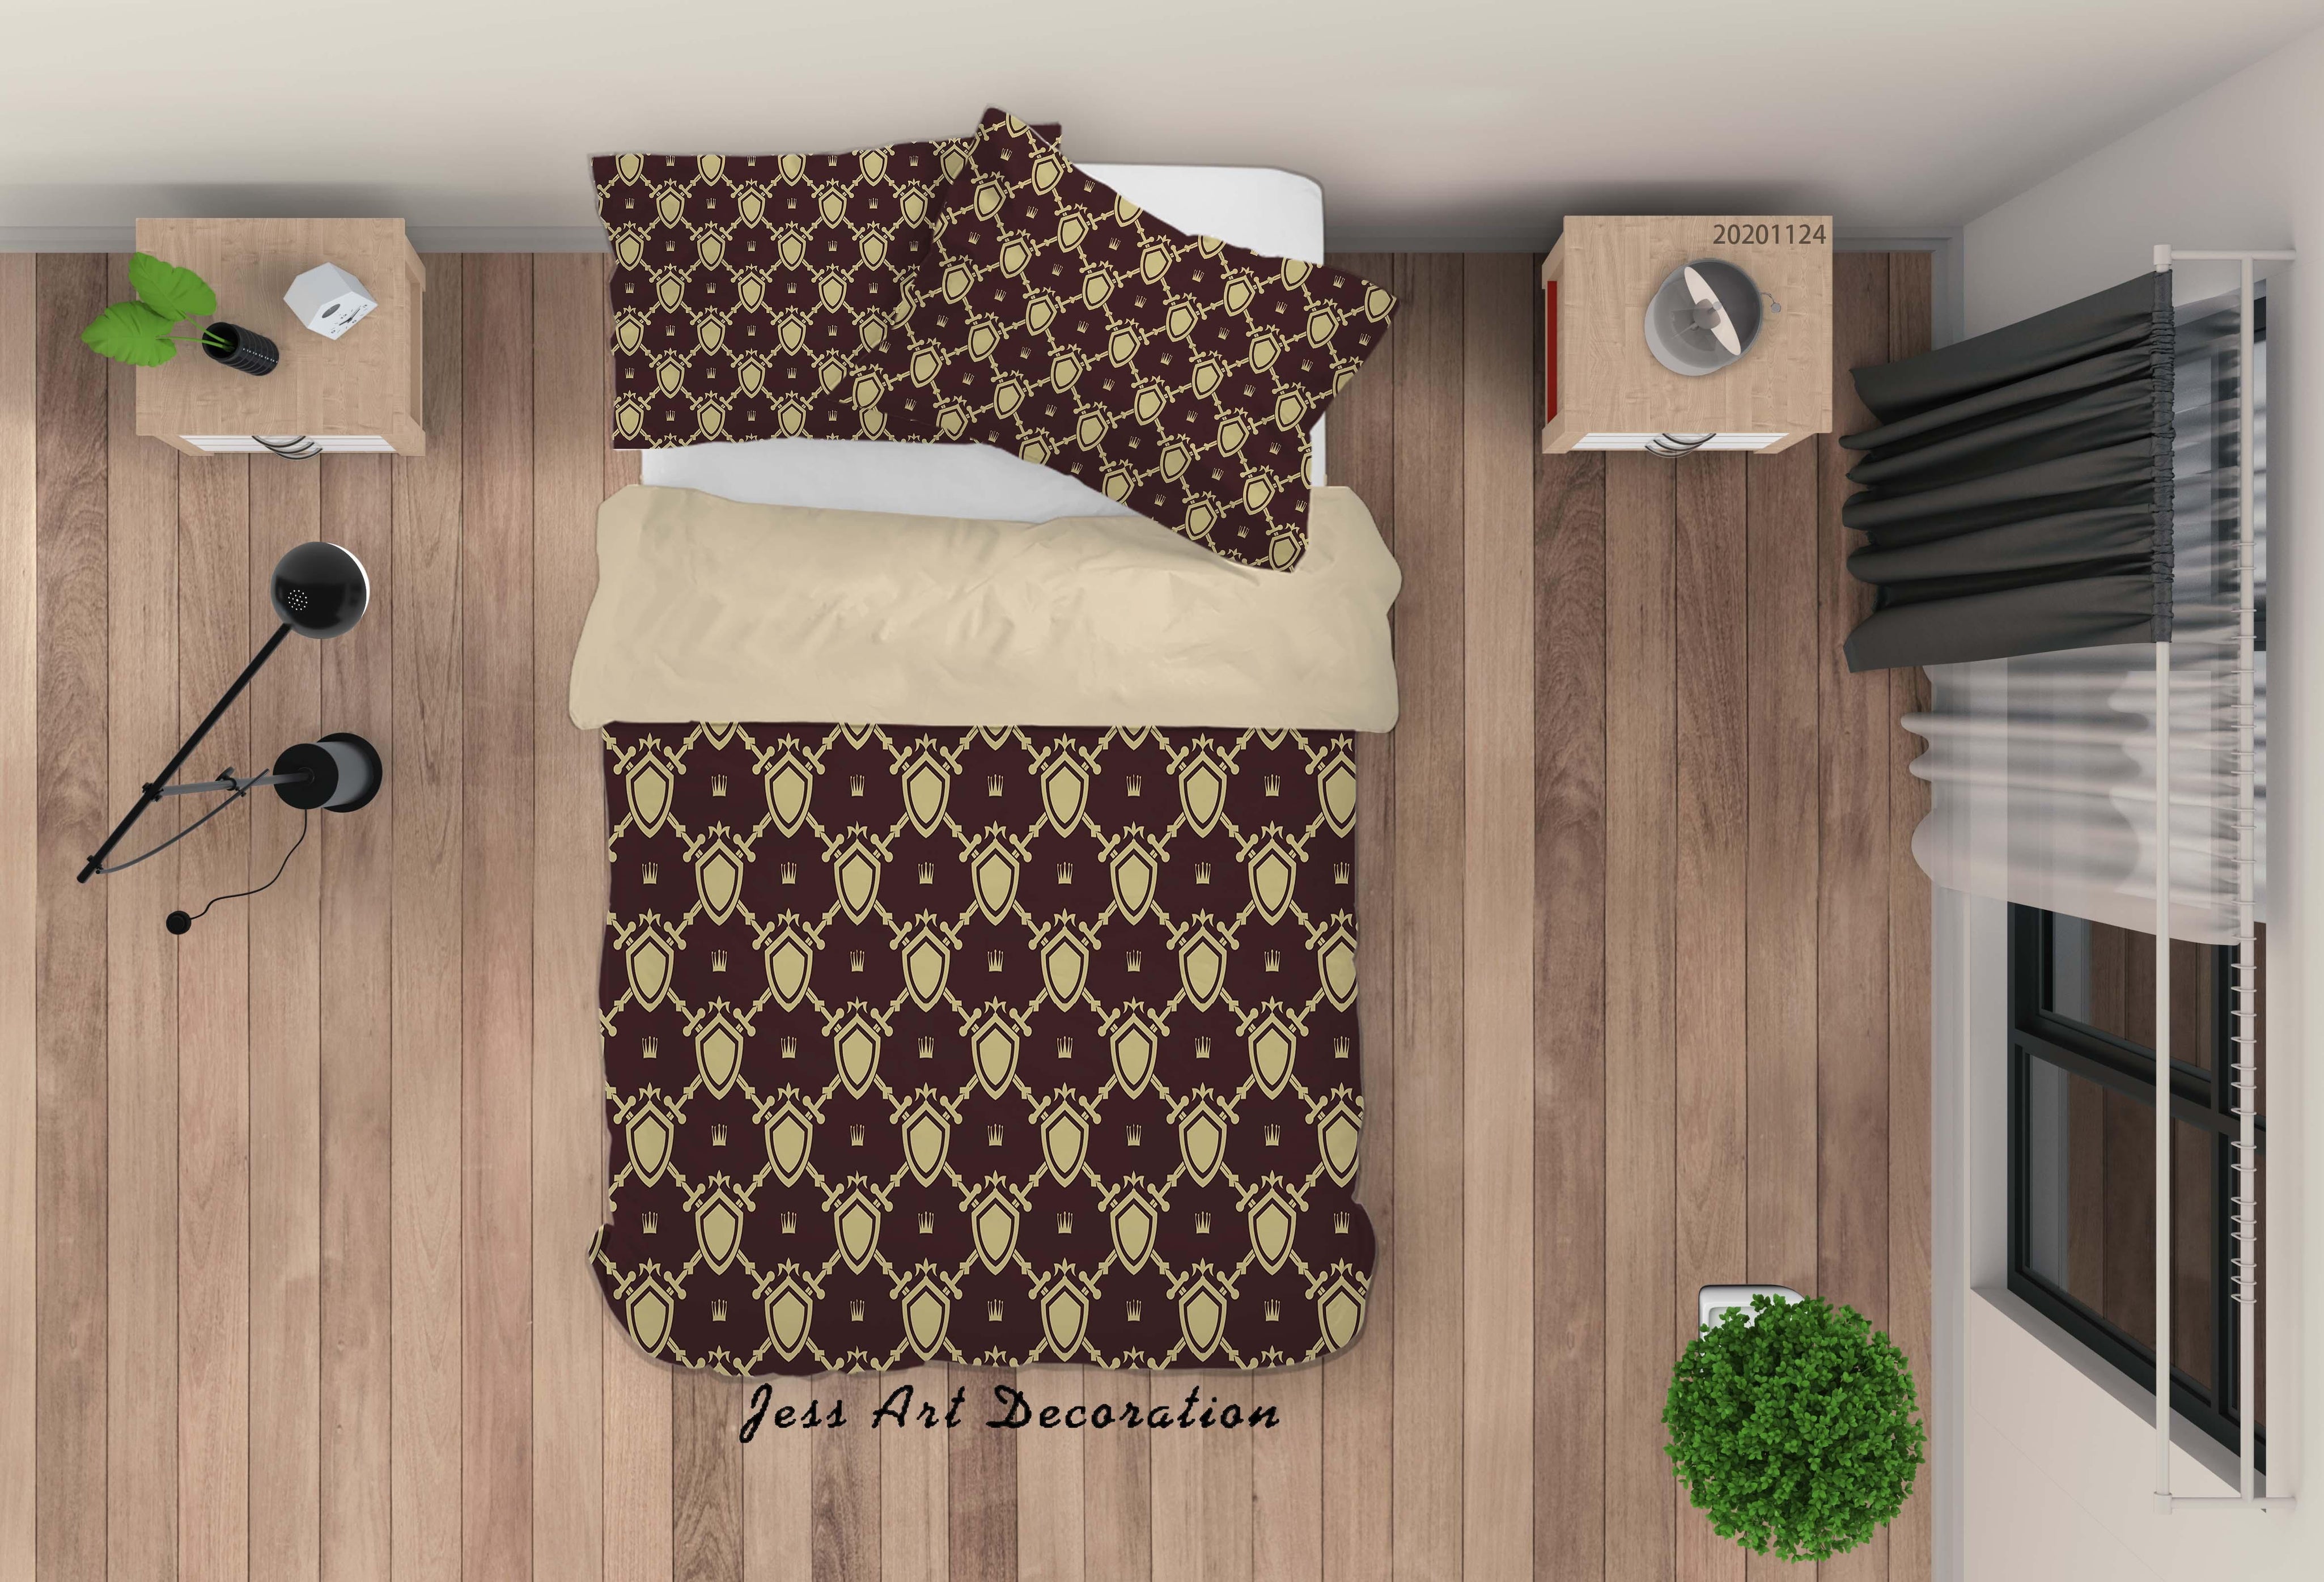 3D Vintage Sword Shield Pattern Quilt Cover Set Bedding Set Duvet Cover Pillowcases LXL- Jess Art Decoration